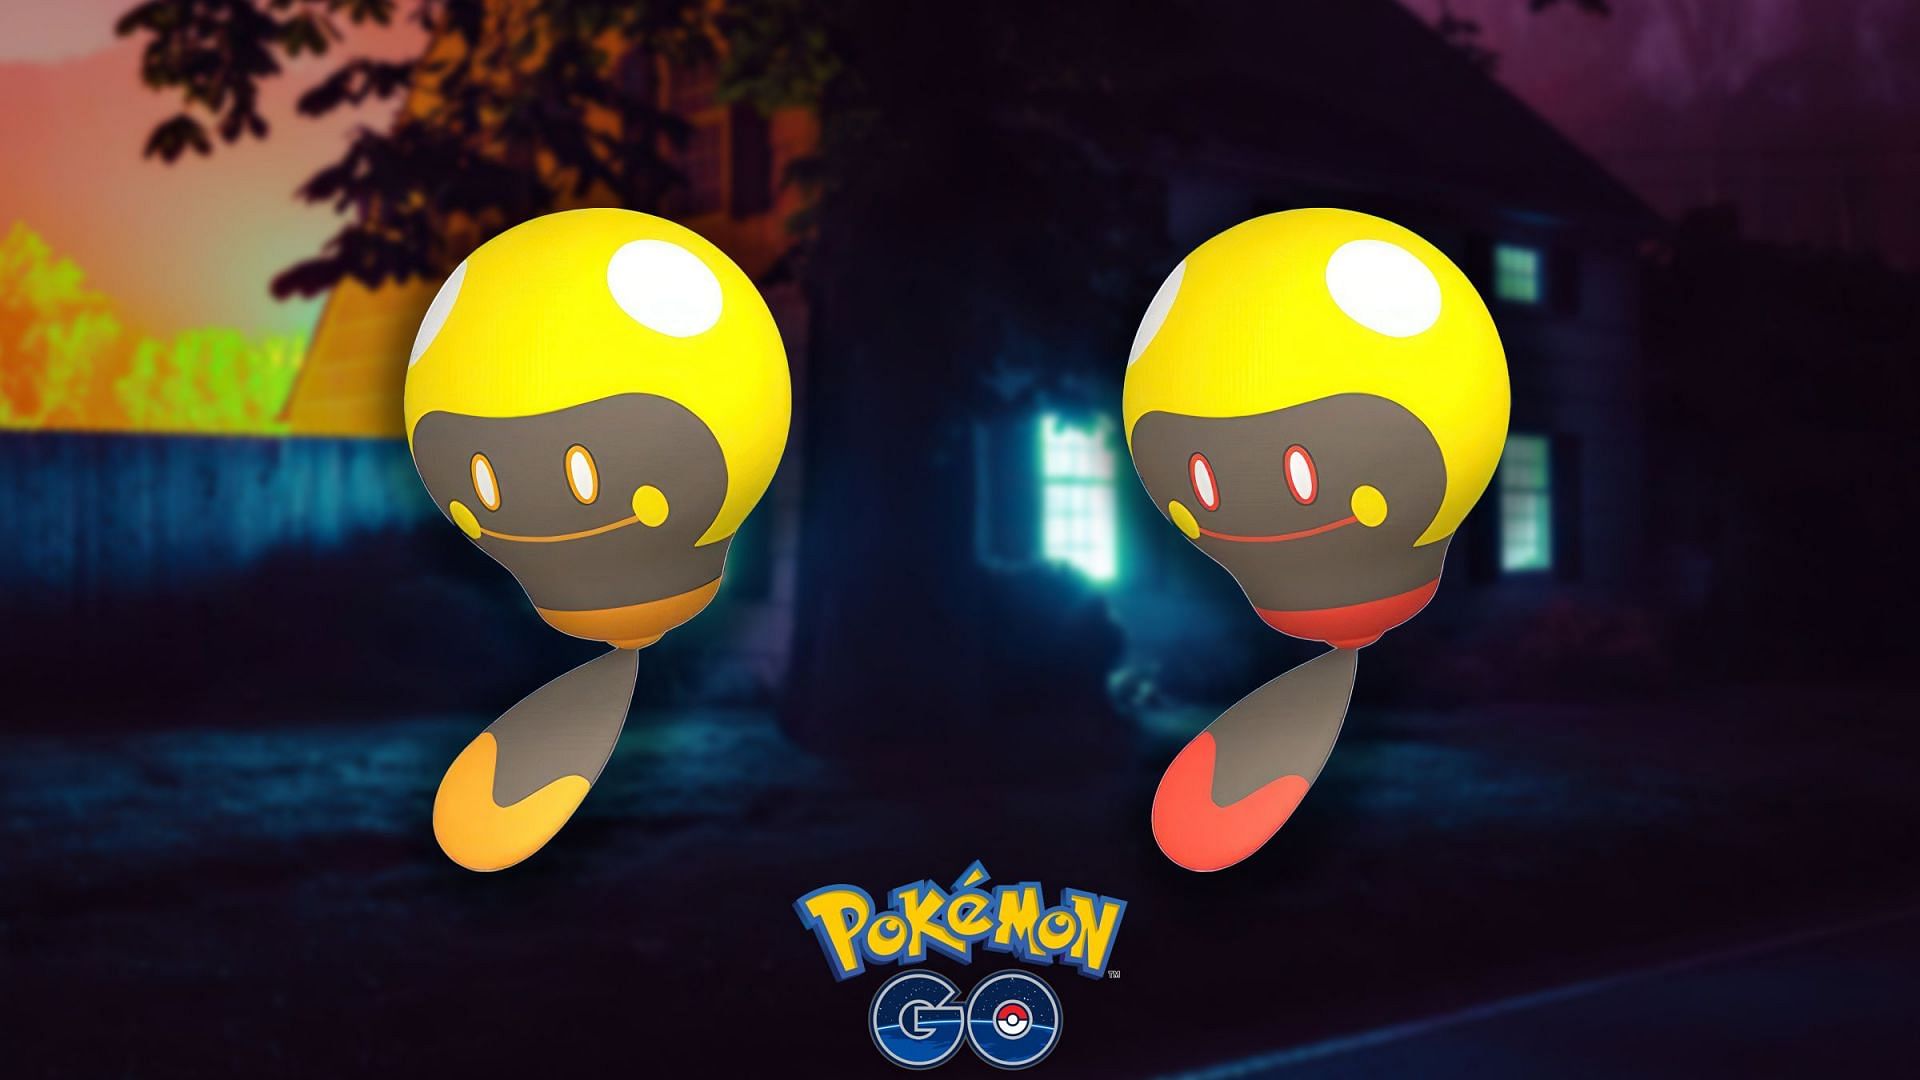 Pokemon GO: Shiny Tadbulb and Shiny Bellibolt guide